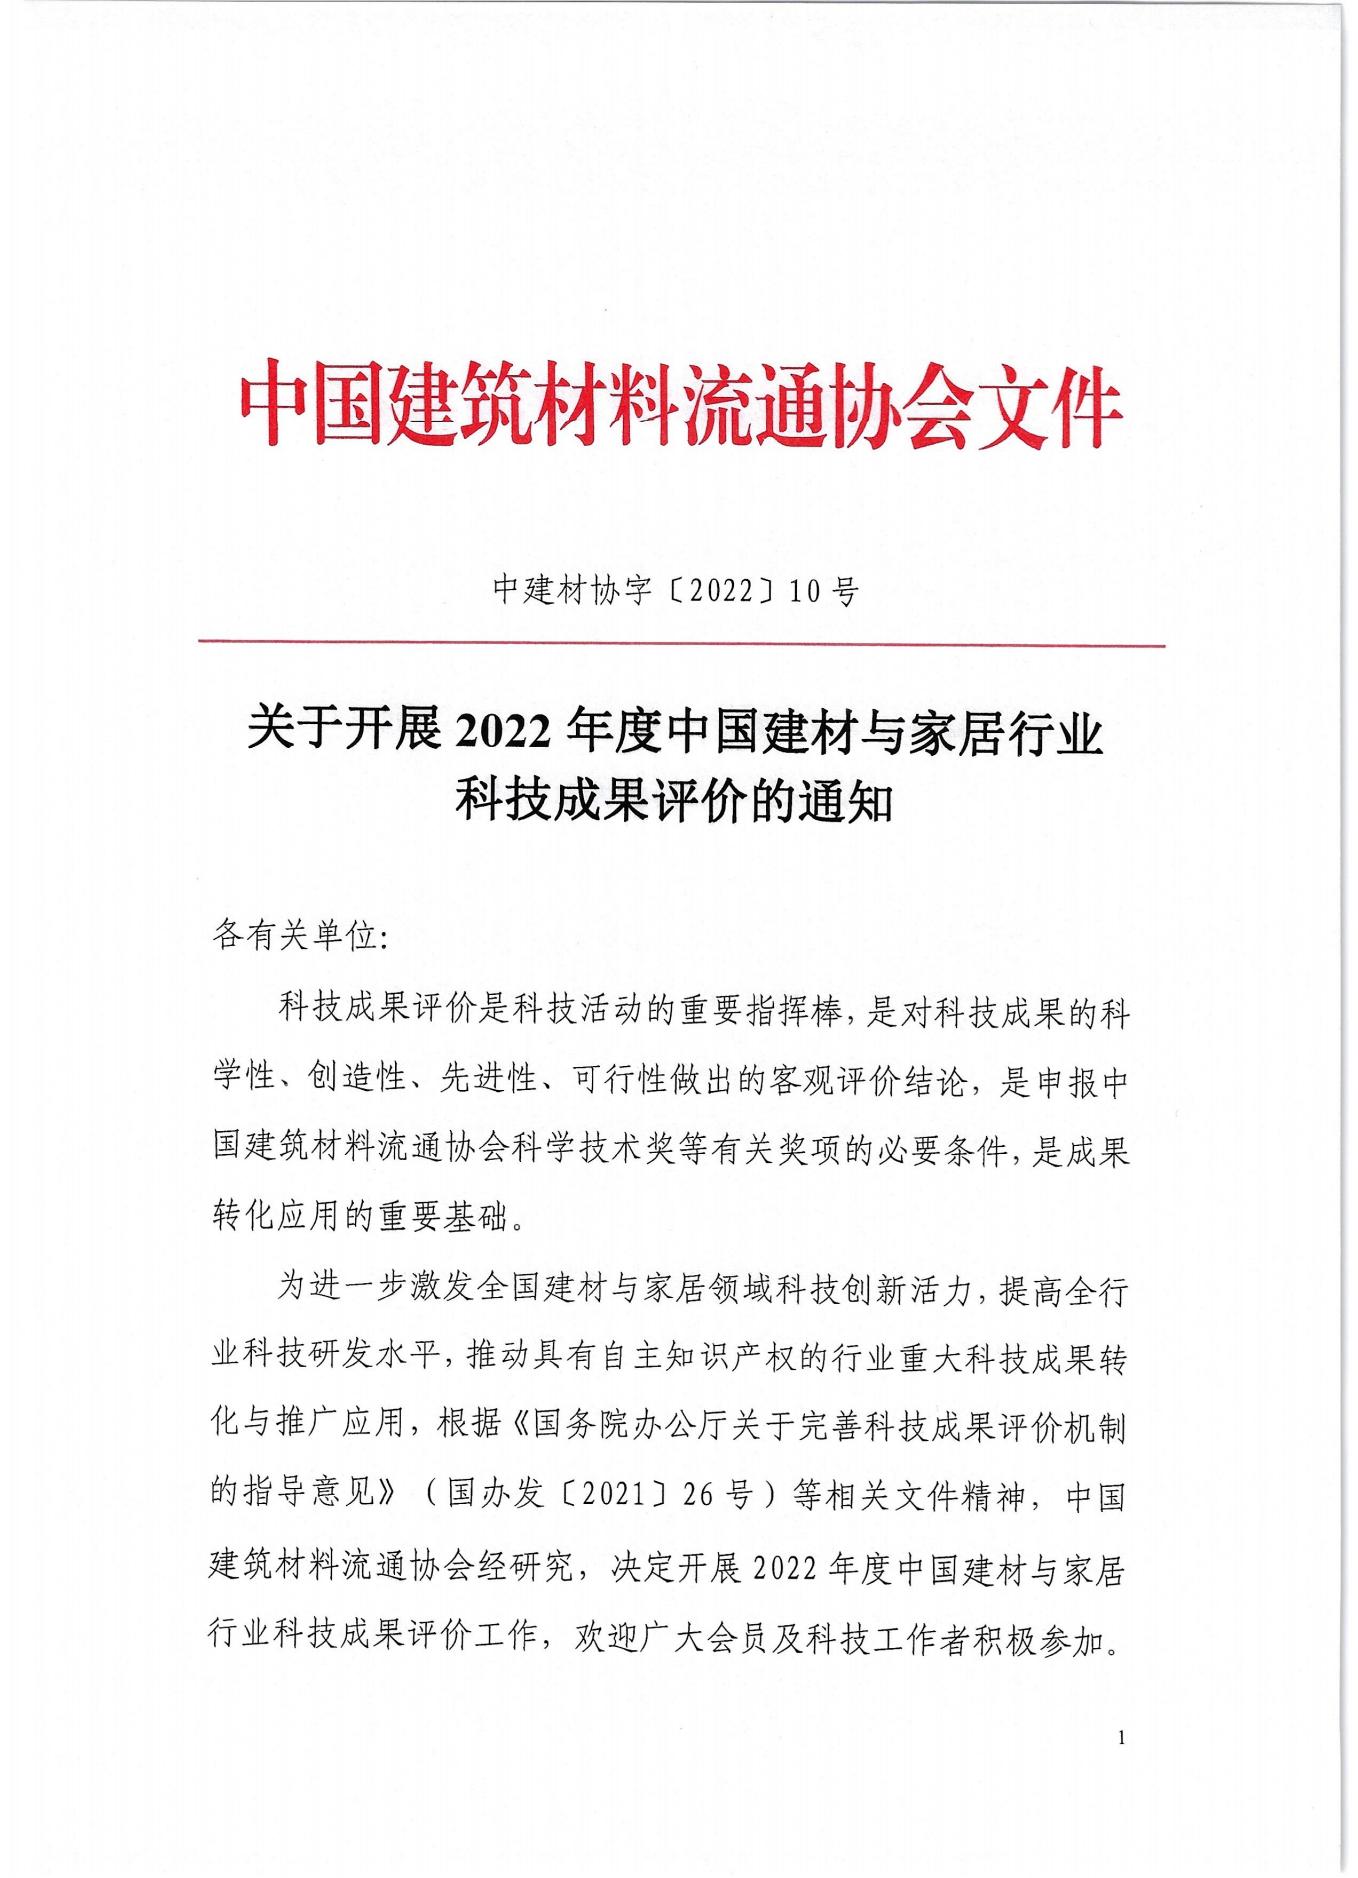 关于开展2022年度中国建材与家居行业科技成果评价的通知